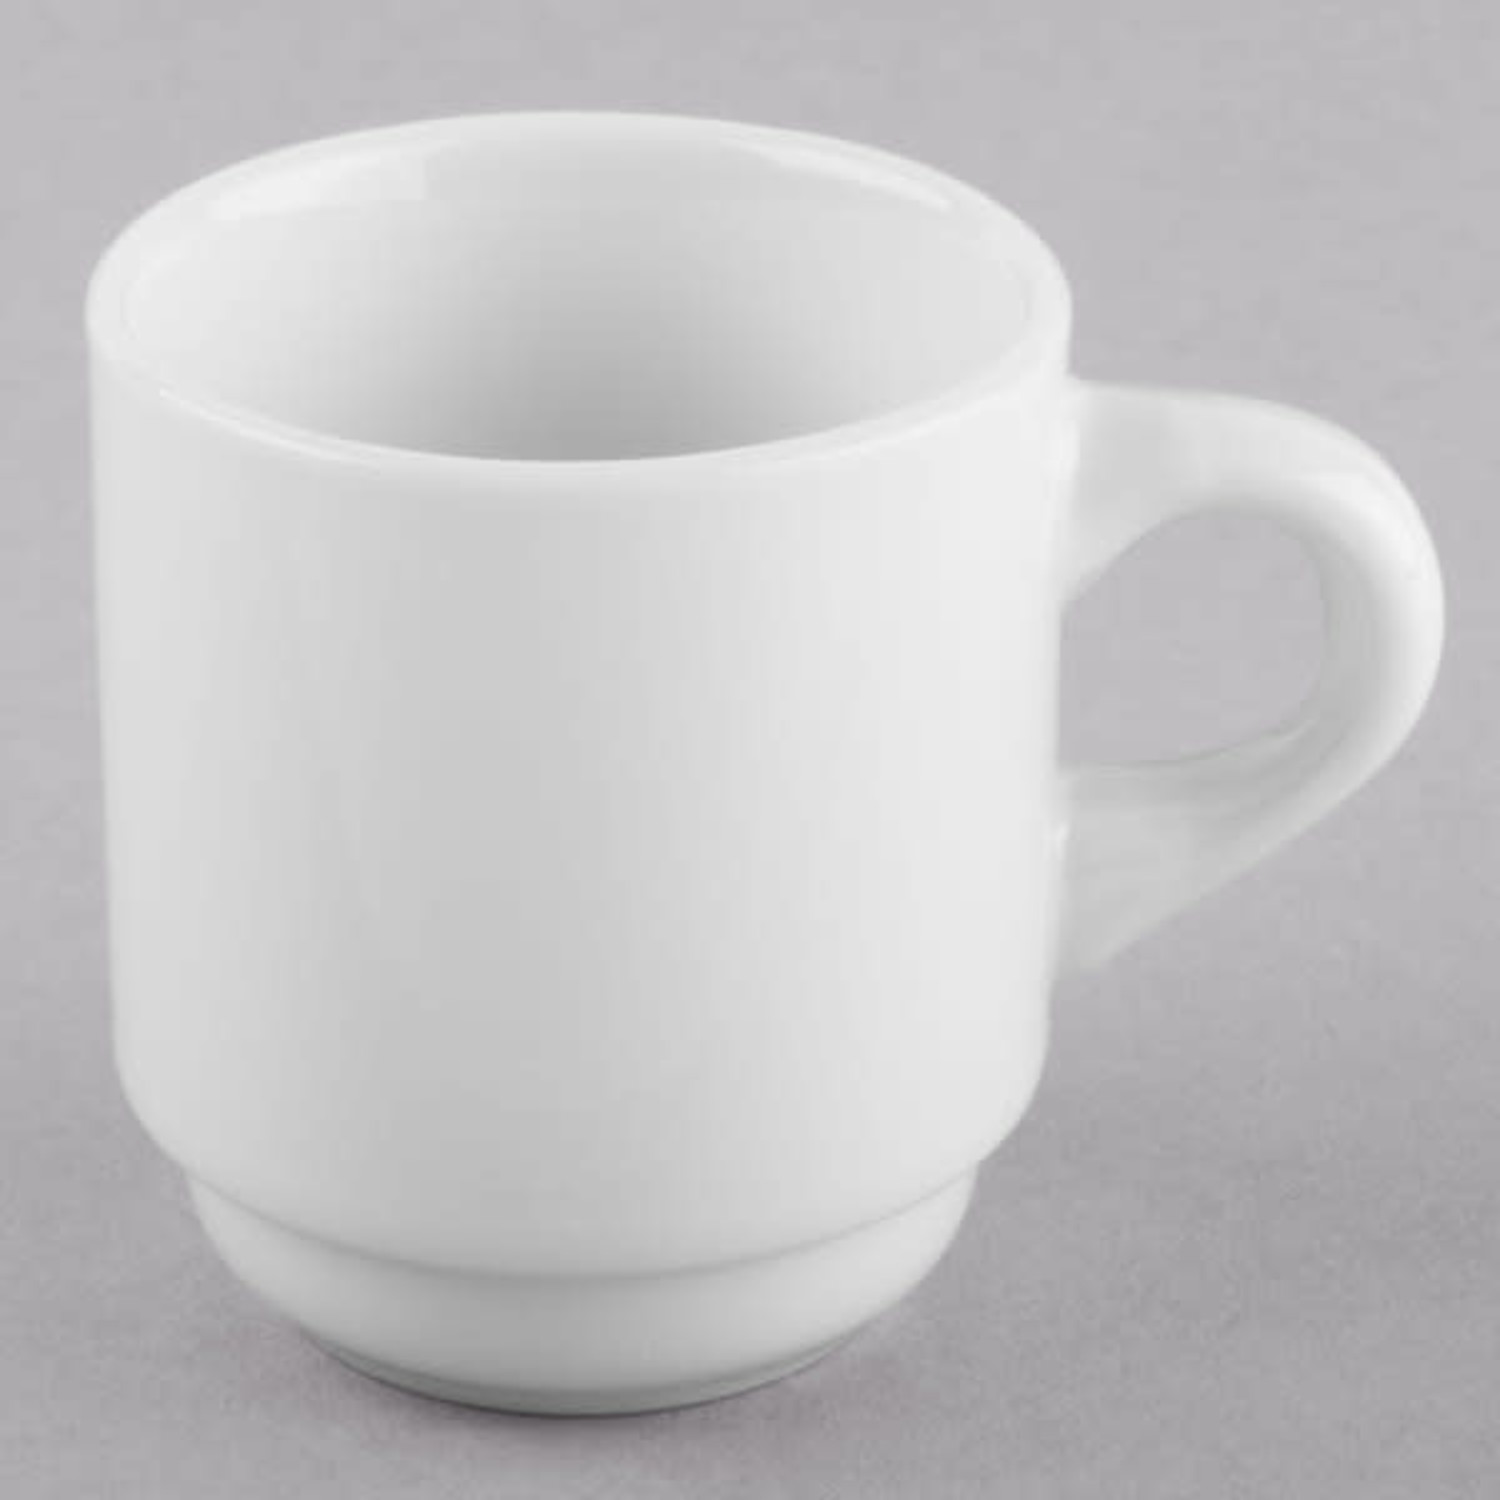 https://cdn.shoplightspeed.com/shops/633447/files/43581989/1500x4000x3/white-espresso-cup-saucer.jpg